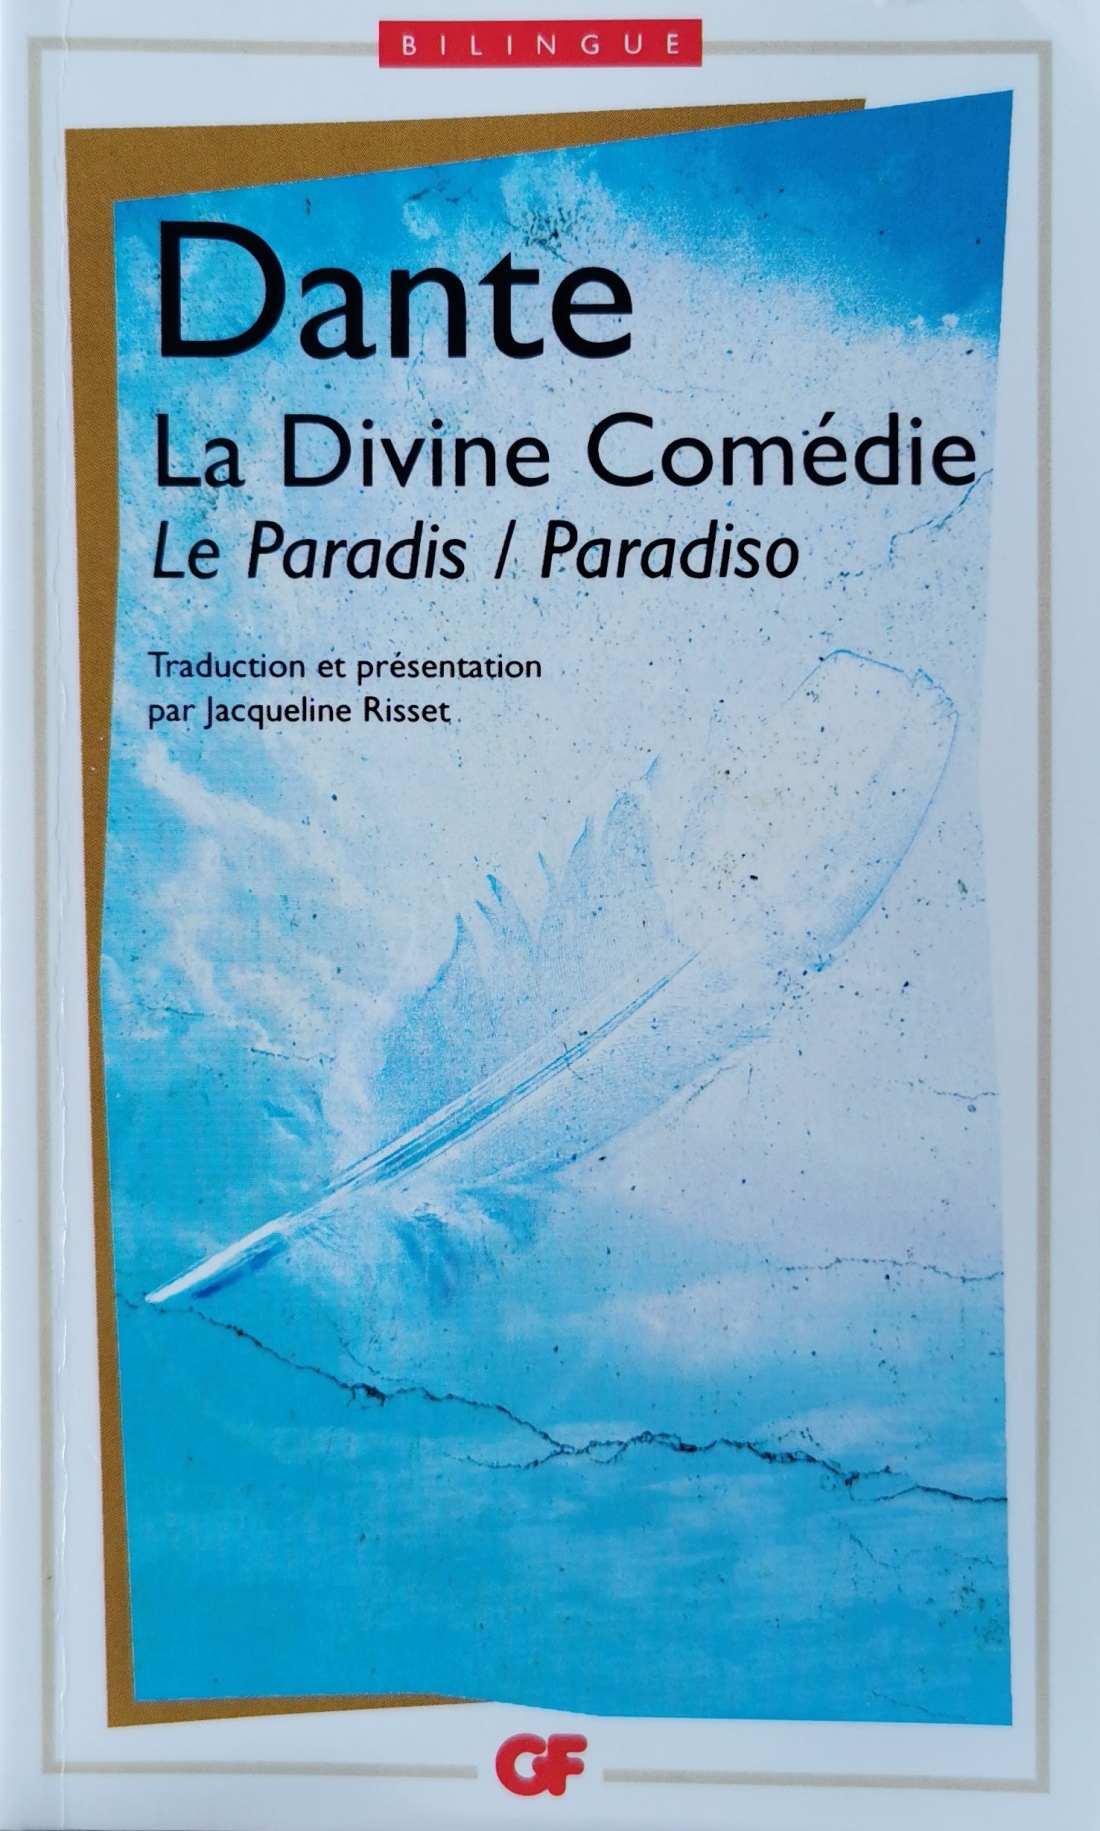 Dante, Divine Comédie - Paradis